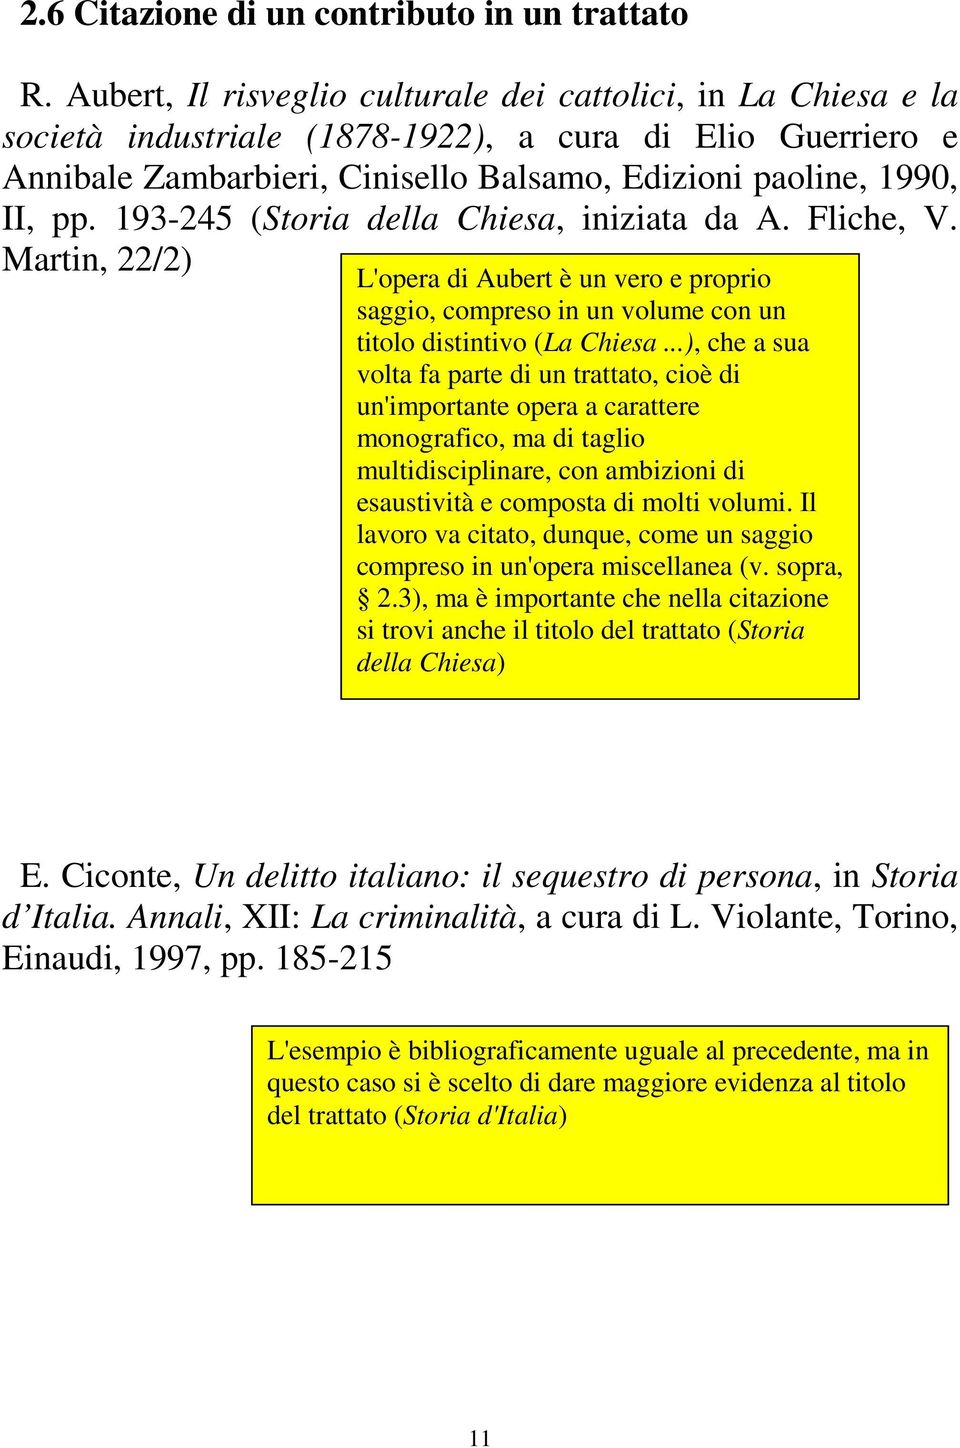 193-245 (Storia della Chiesa, iniziata da A. Fliche, V. Martin, 22/2) L'opera di Aubert è un vero e proprio saggio, compreso in un volume con un titolo distintivo (La Chiesa.